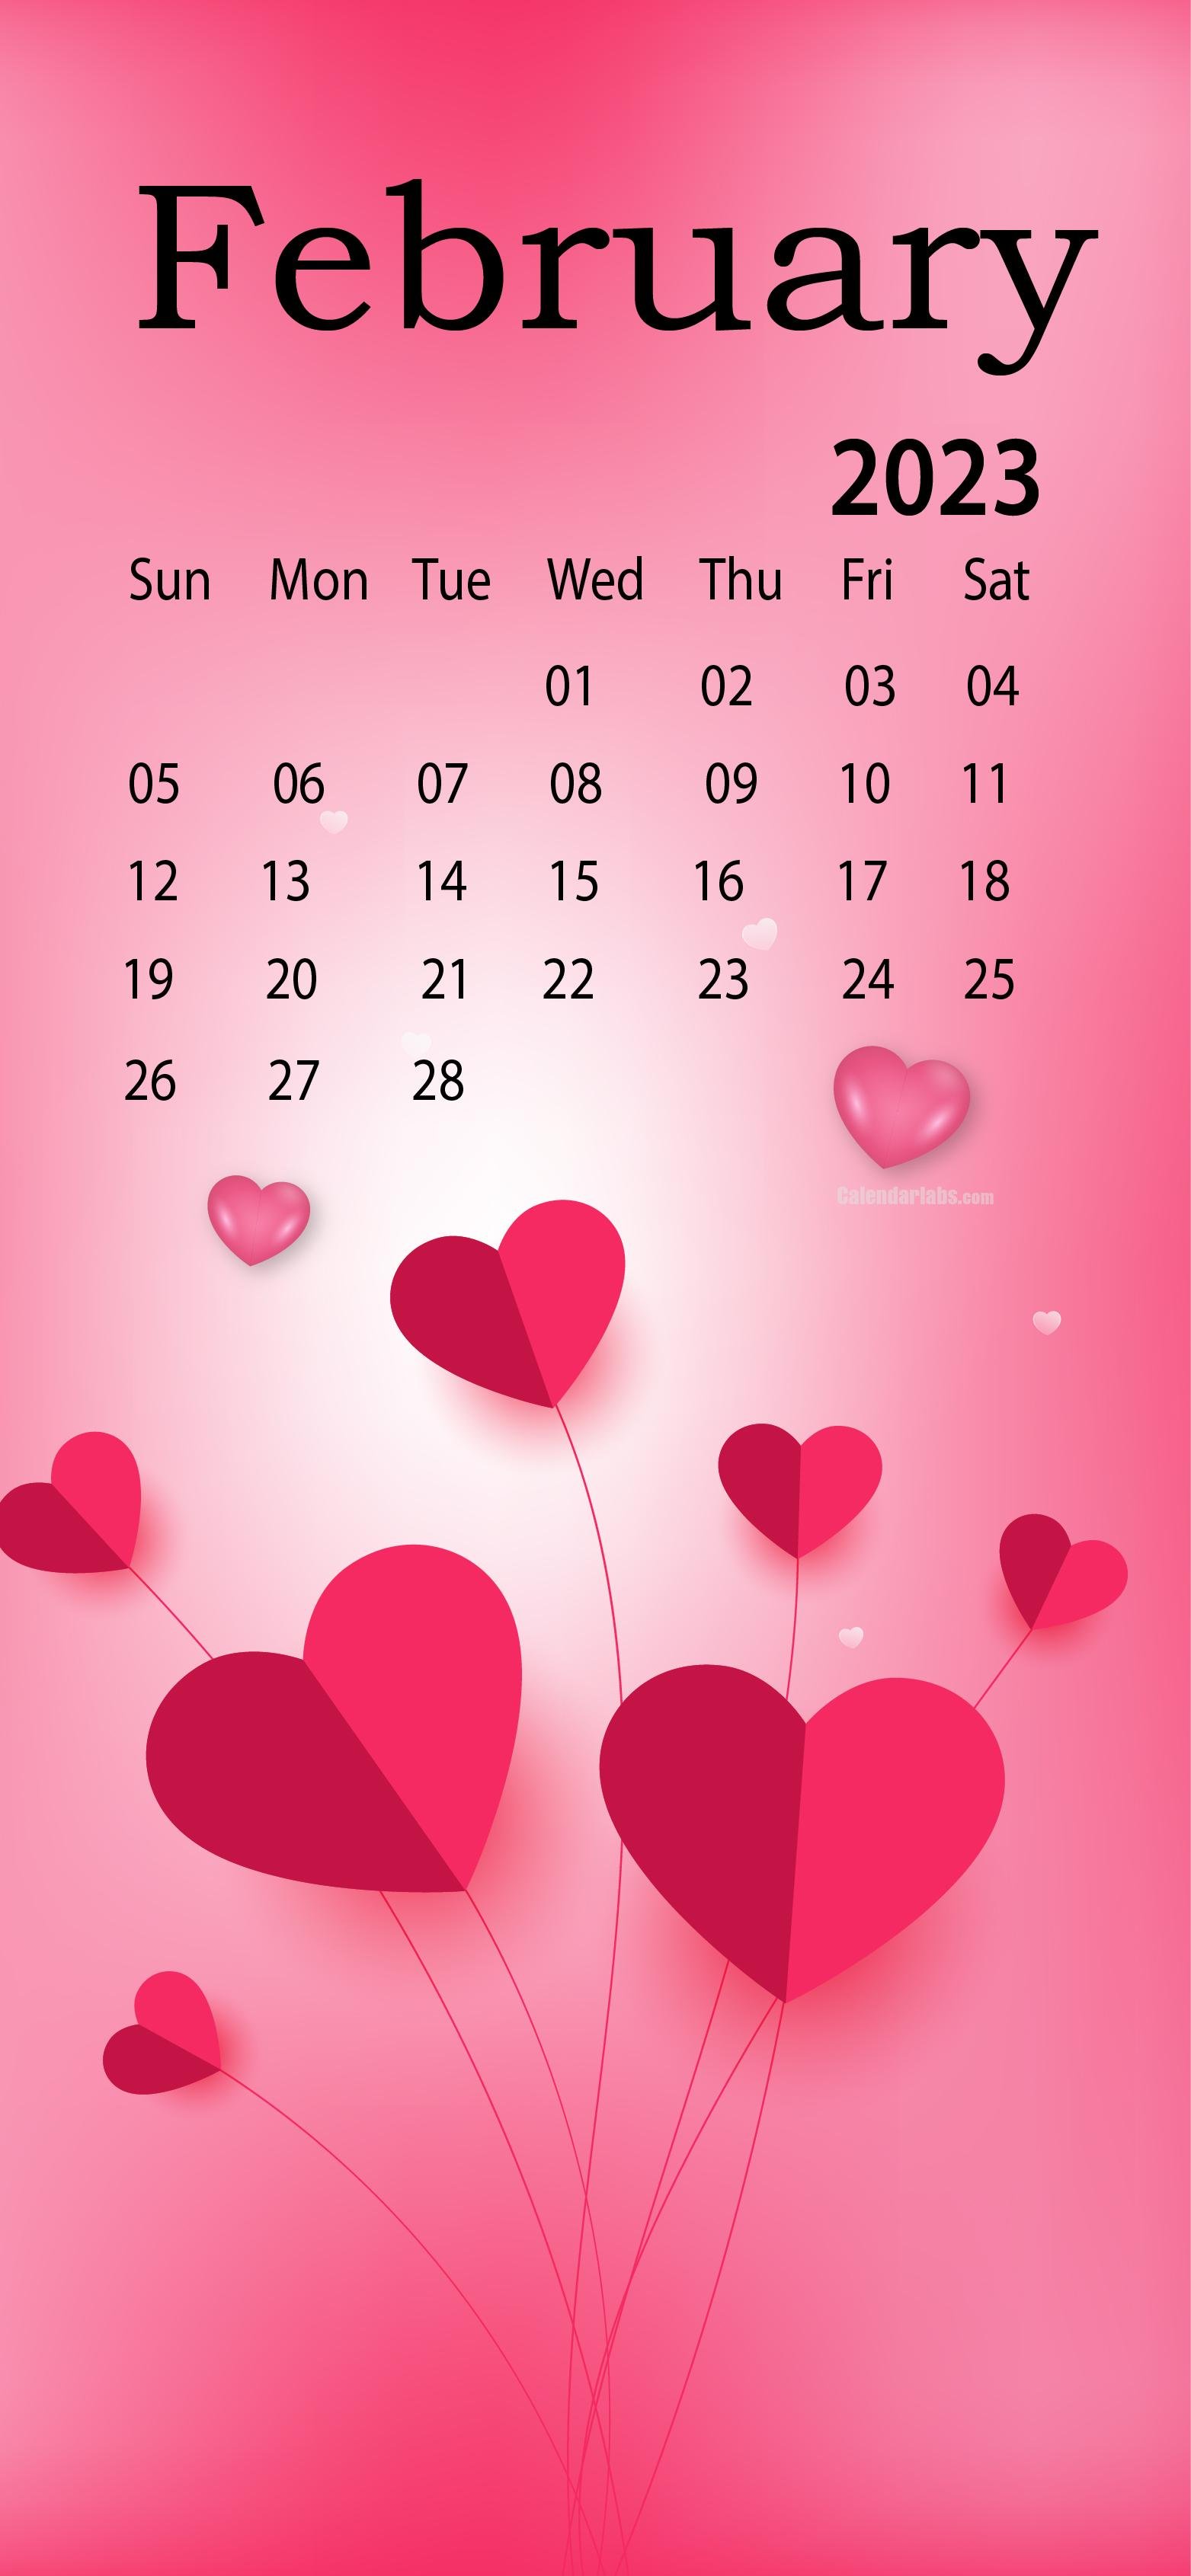 February 2023 Desktop Wallpaper Calendar   CalendarLabs